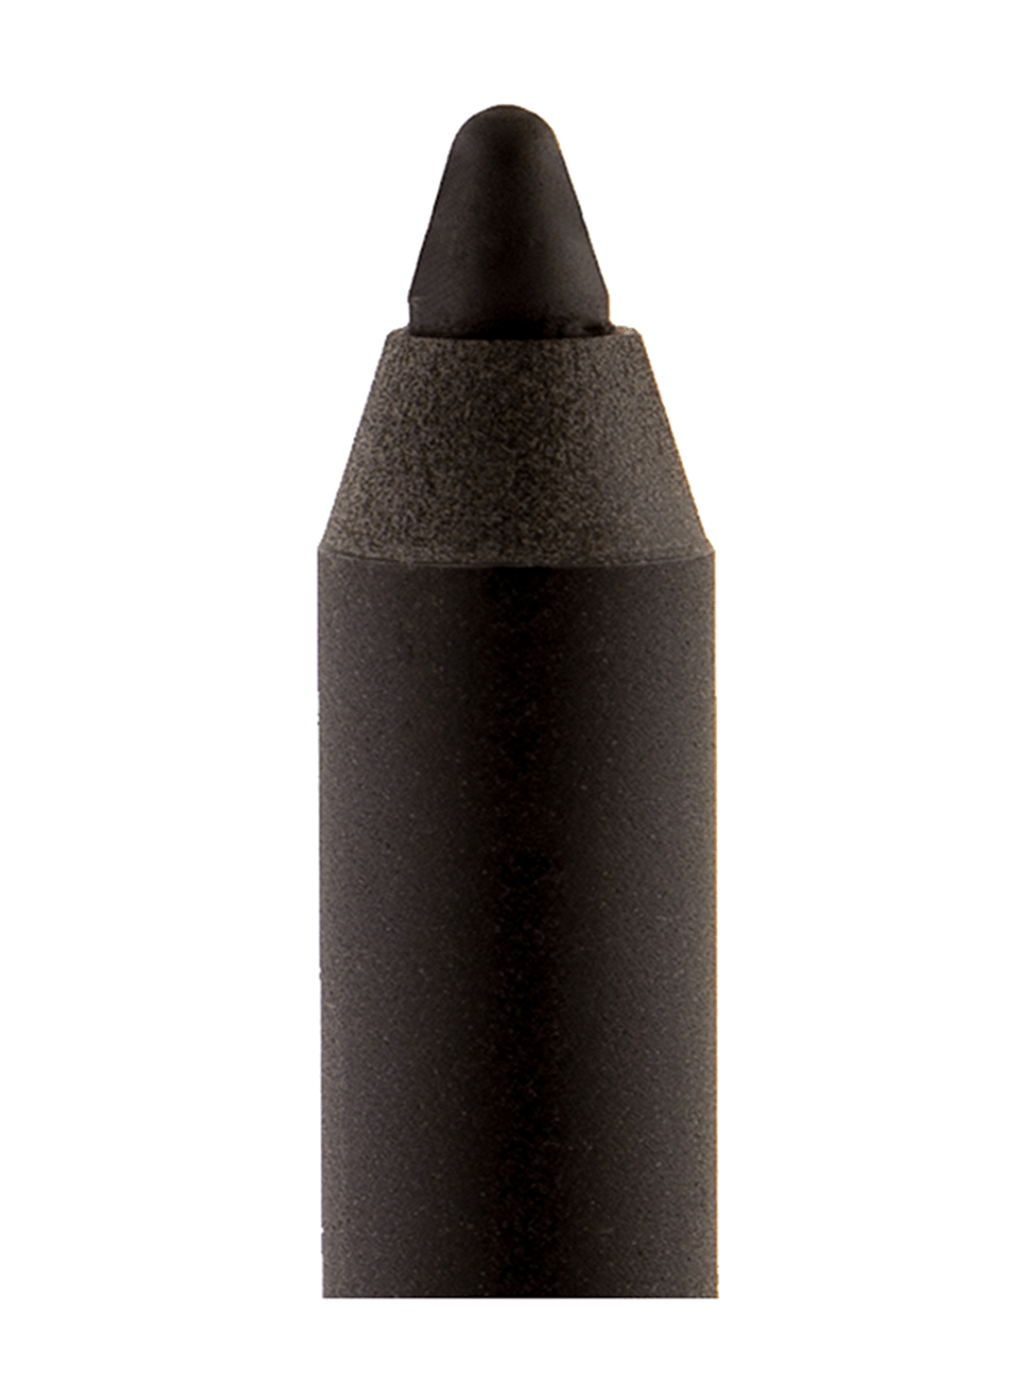 Black Radiance® Eye Appeal™ Kohl Black Blending Pencil, 1 ct - Kroger